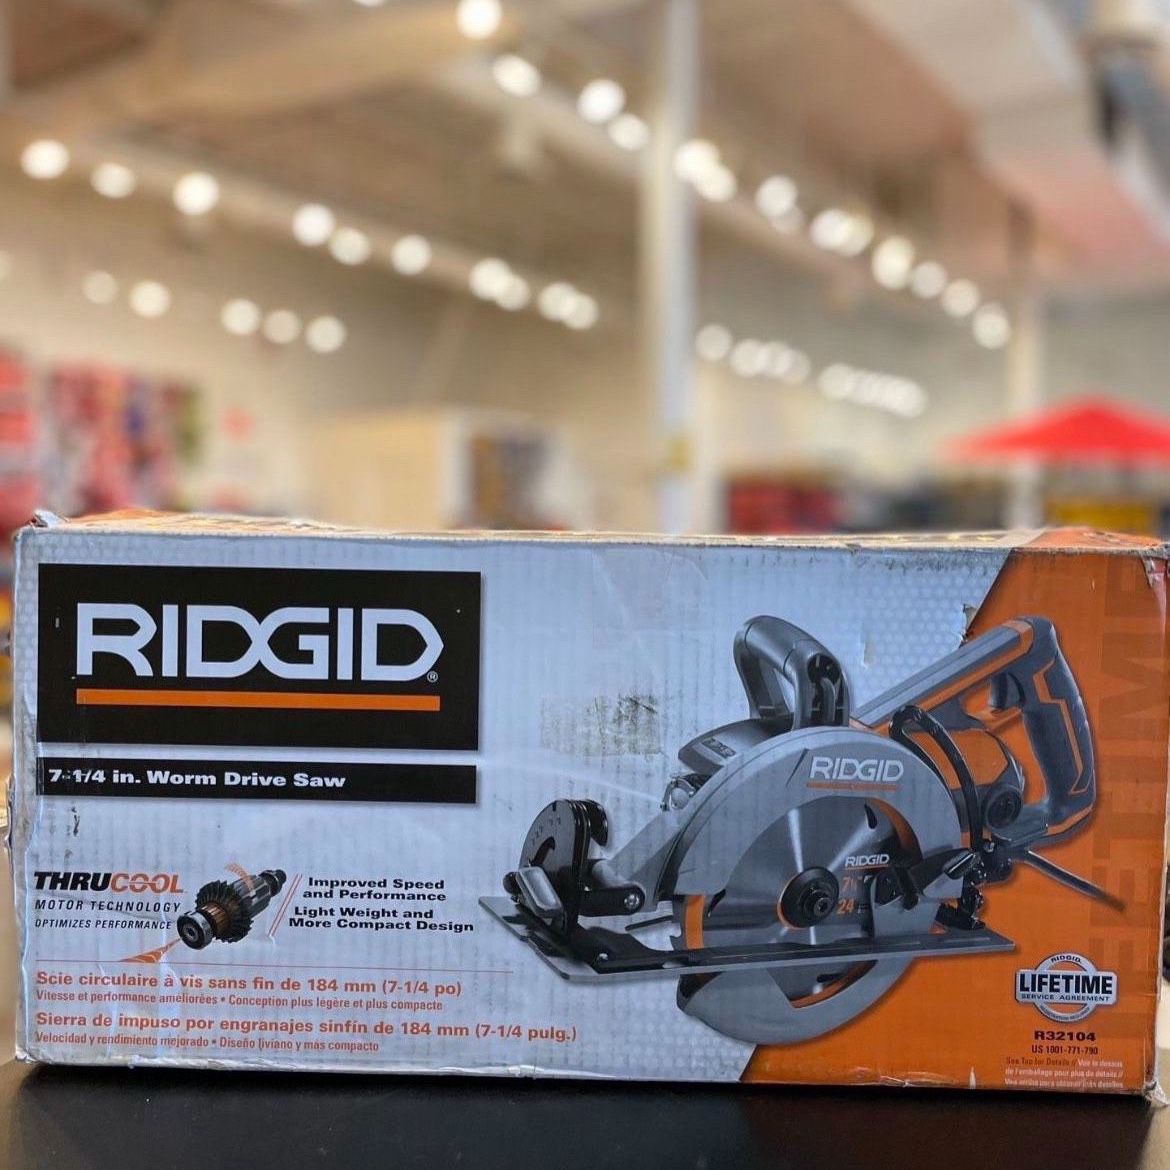 RIDGID Corded 15 Amp 7-1/4 in. Worm Drive Circular Saw R32104